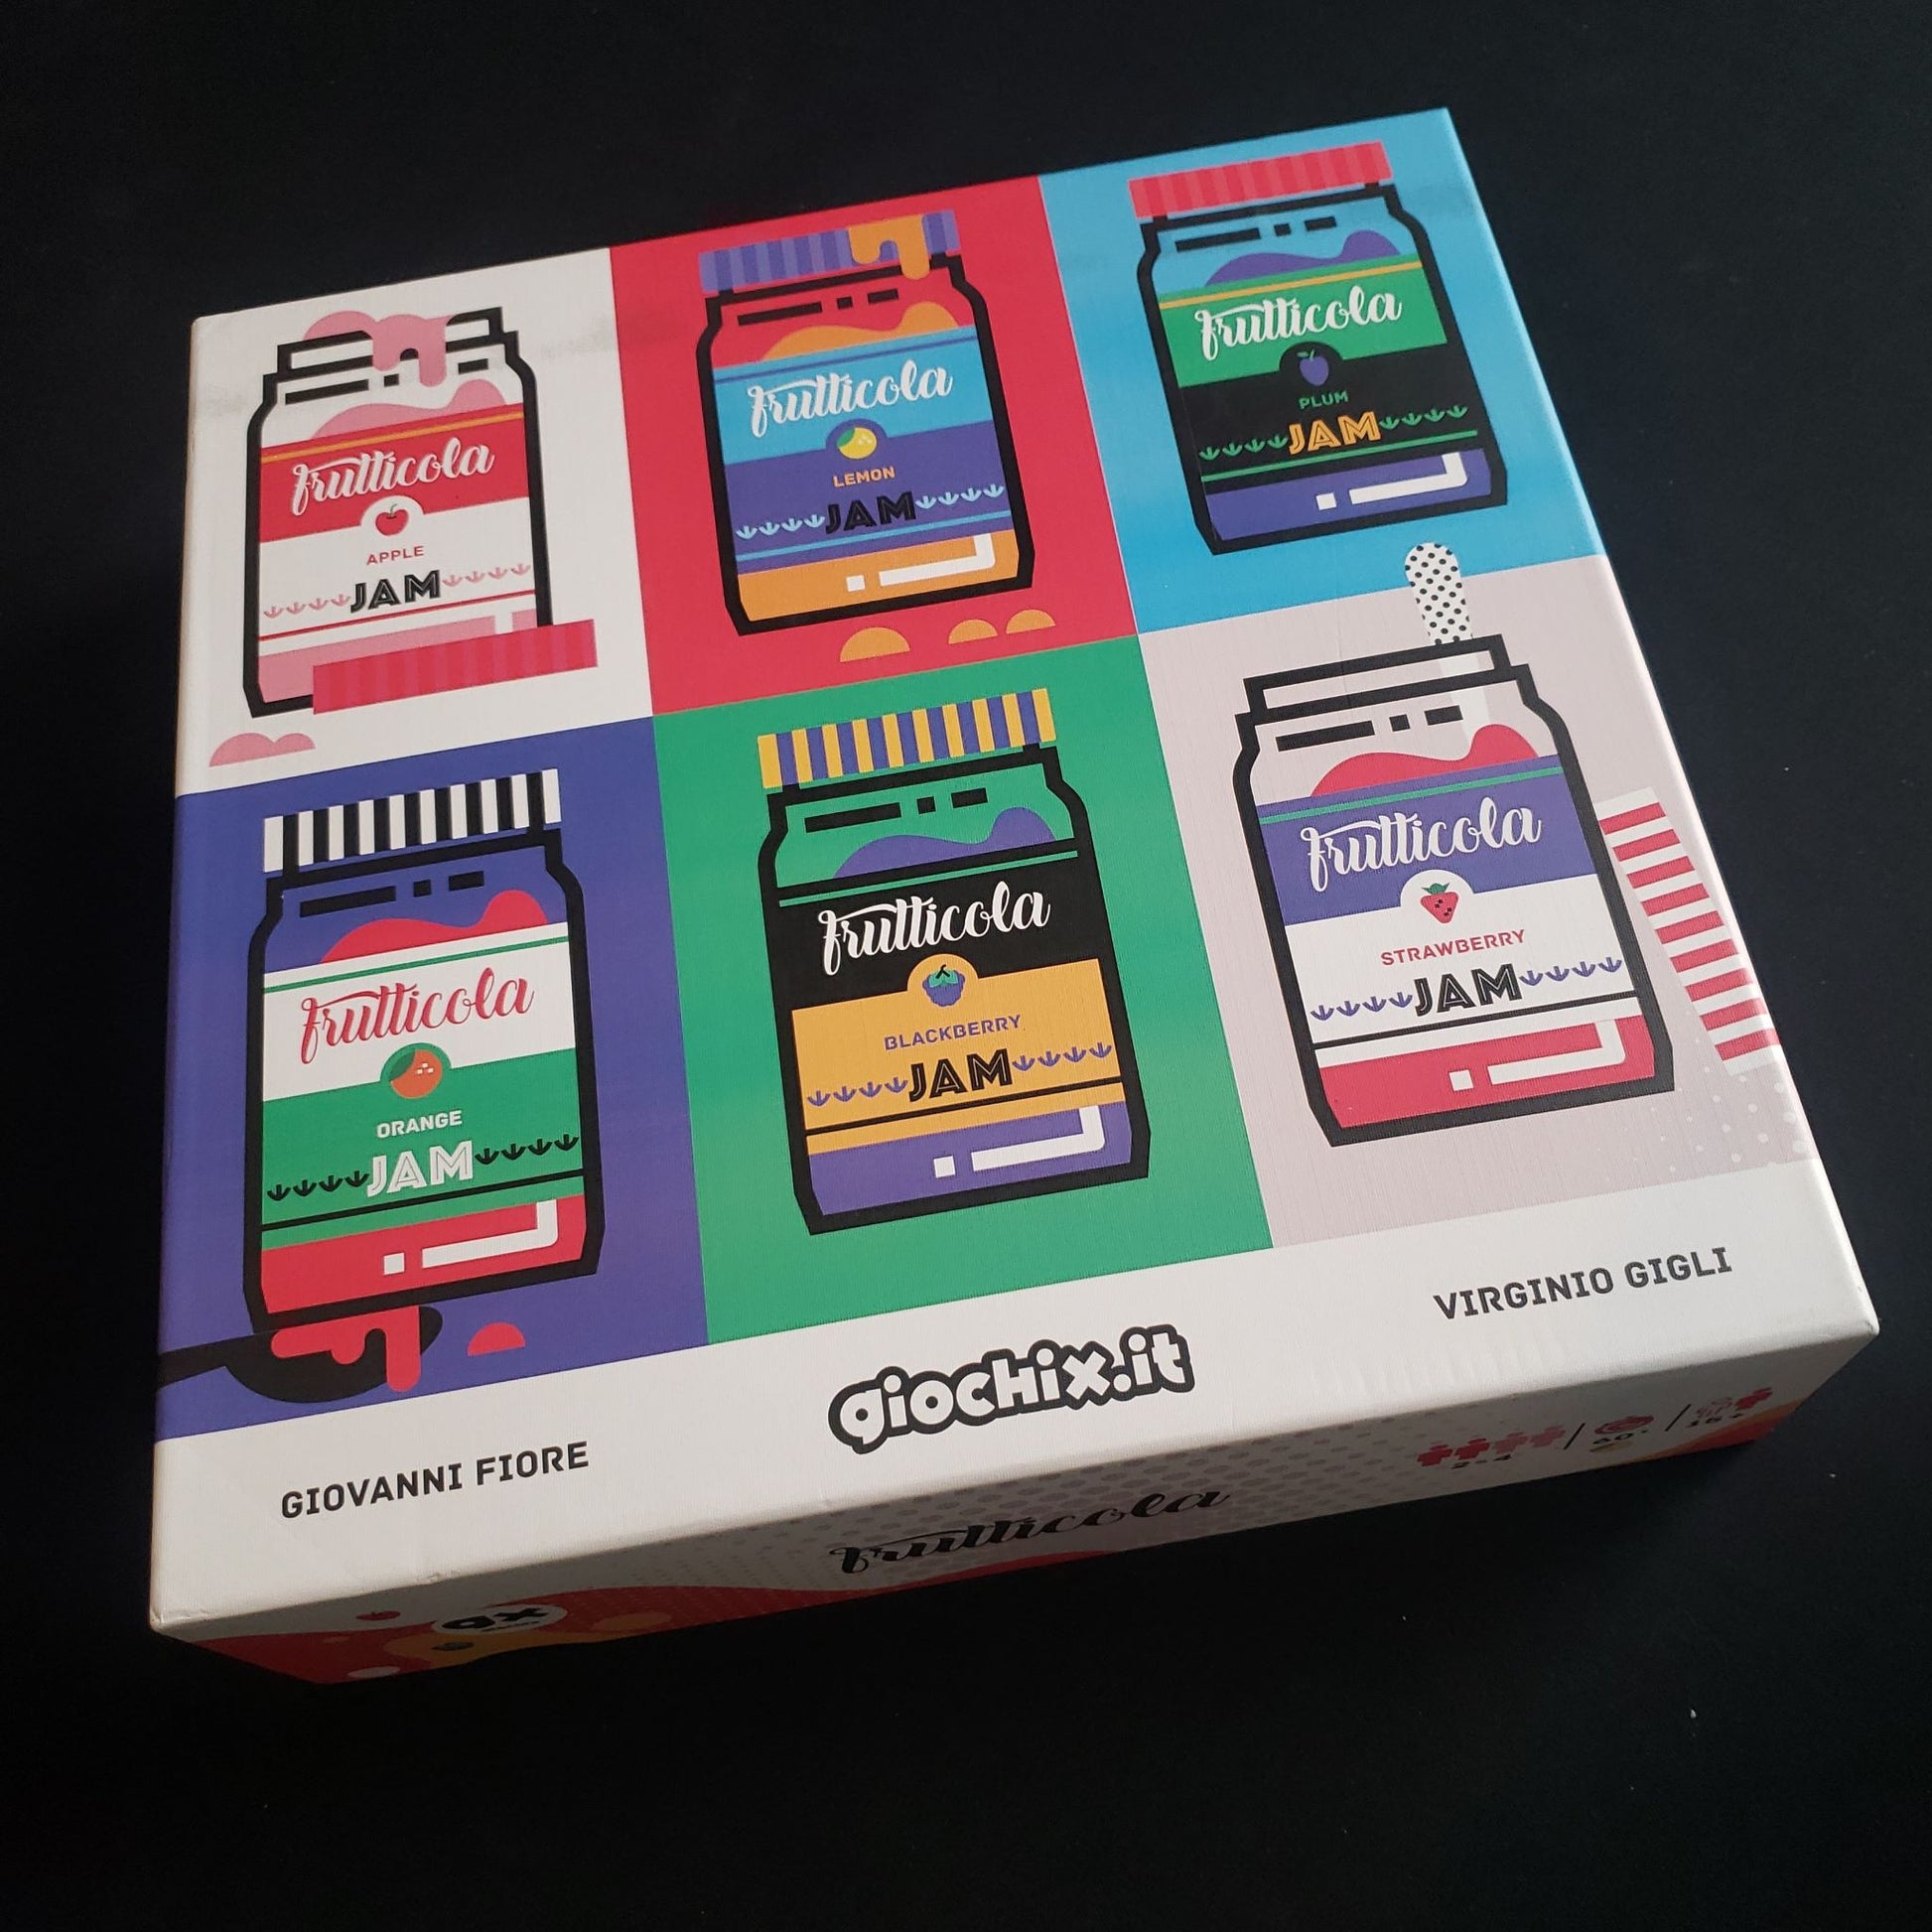 Frutticola board game - front cover of box